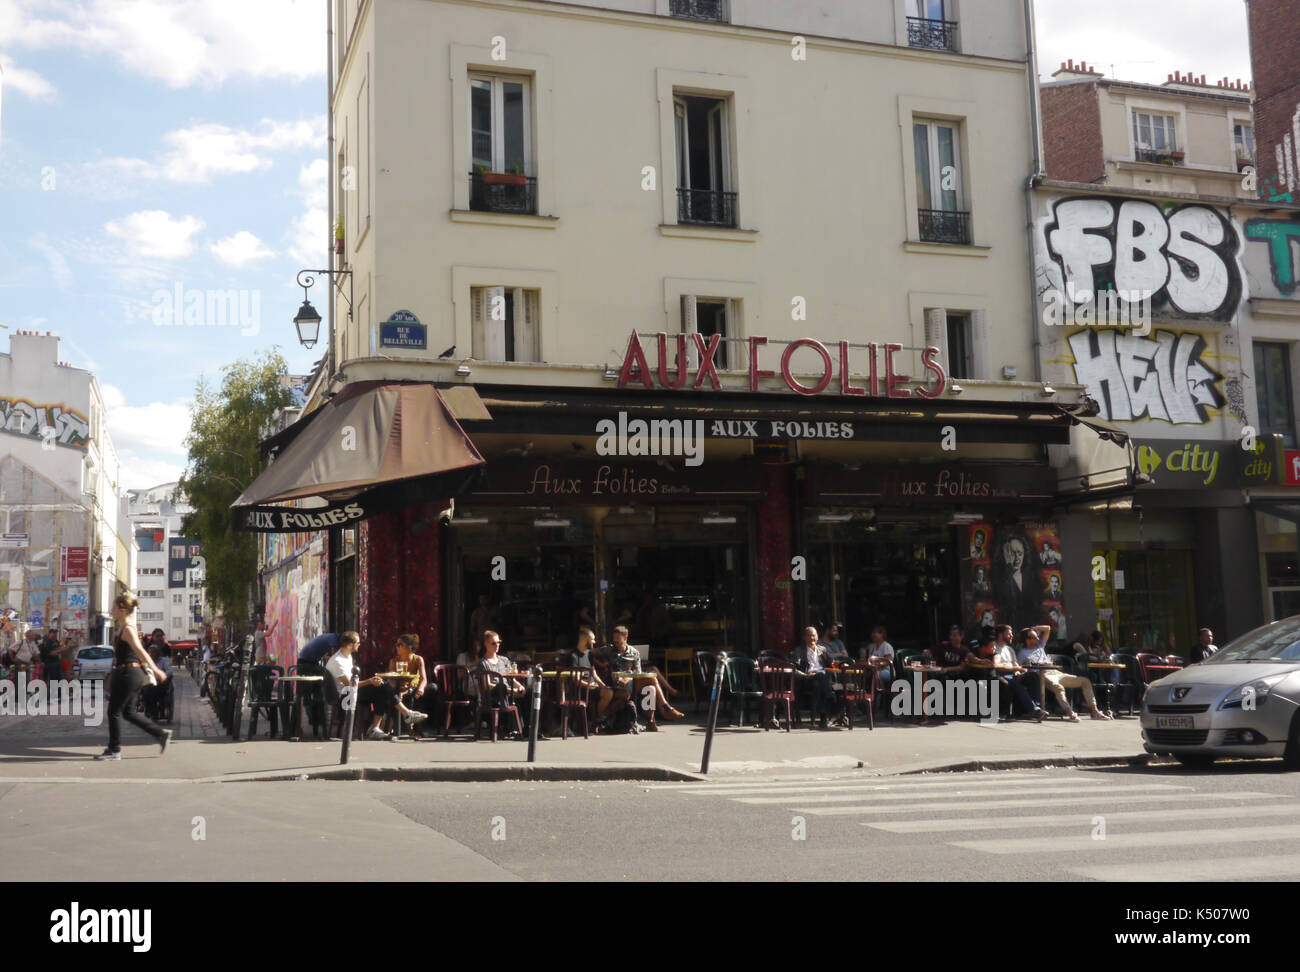 Ein altes Gebäude in Paris mit Aux-Verrücktheiten Leiste unten. Stockfoto